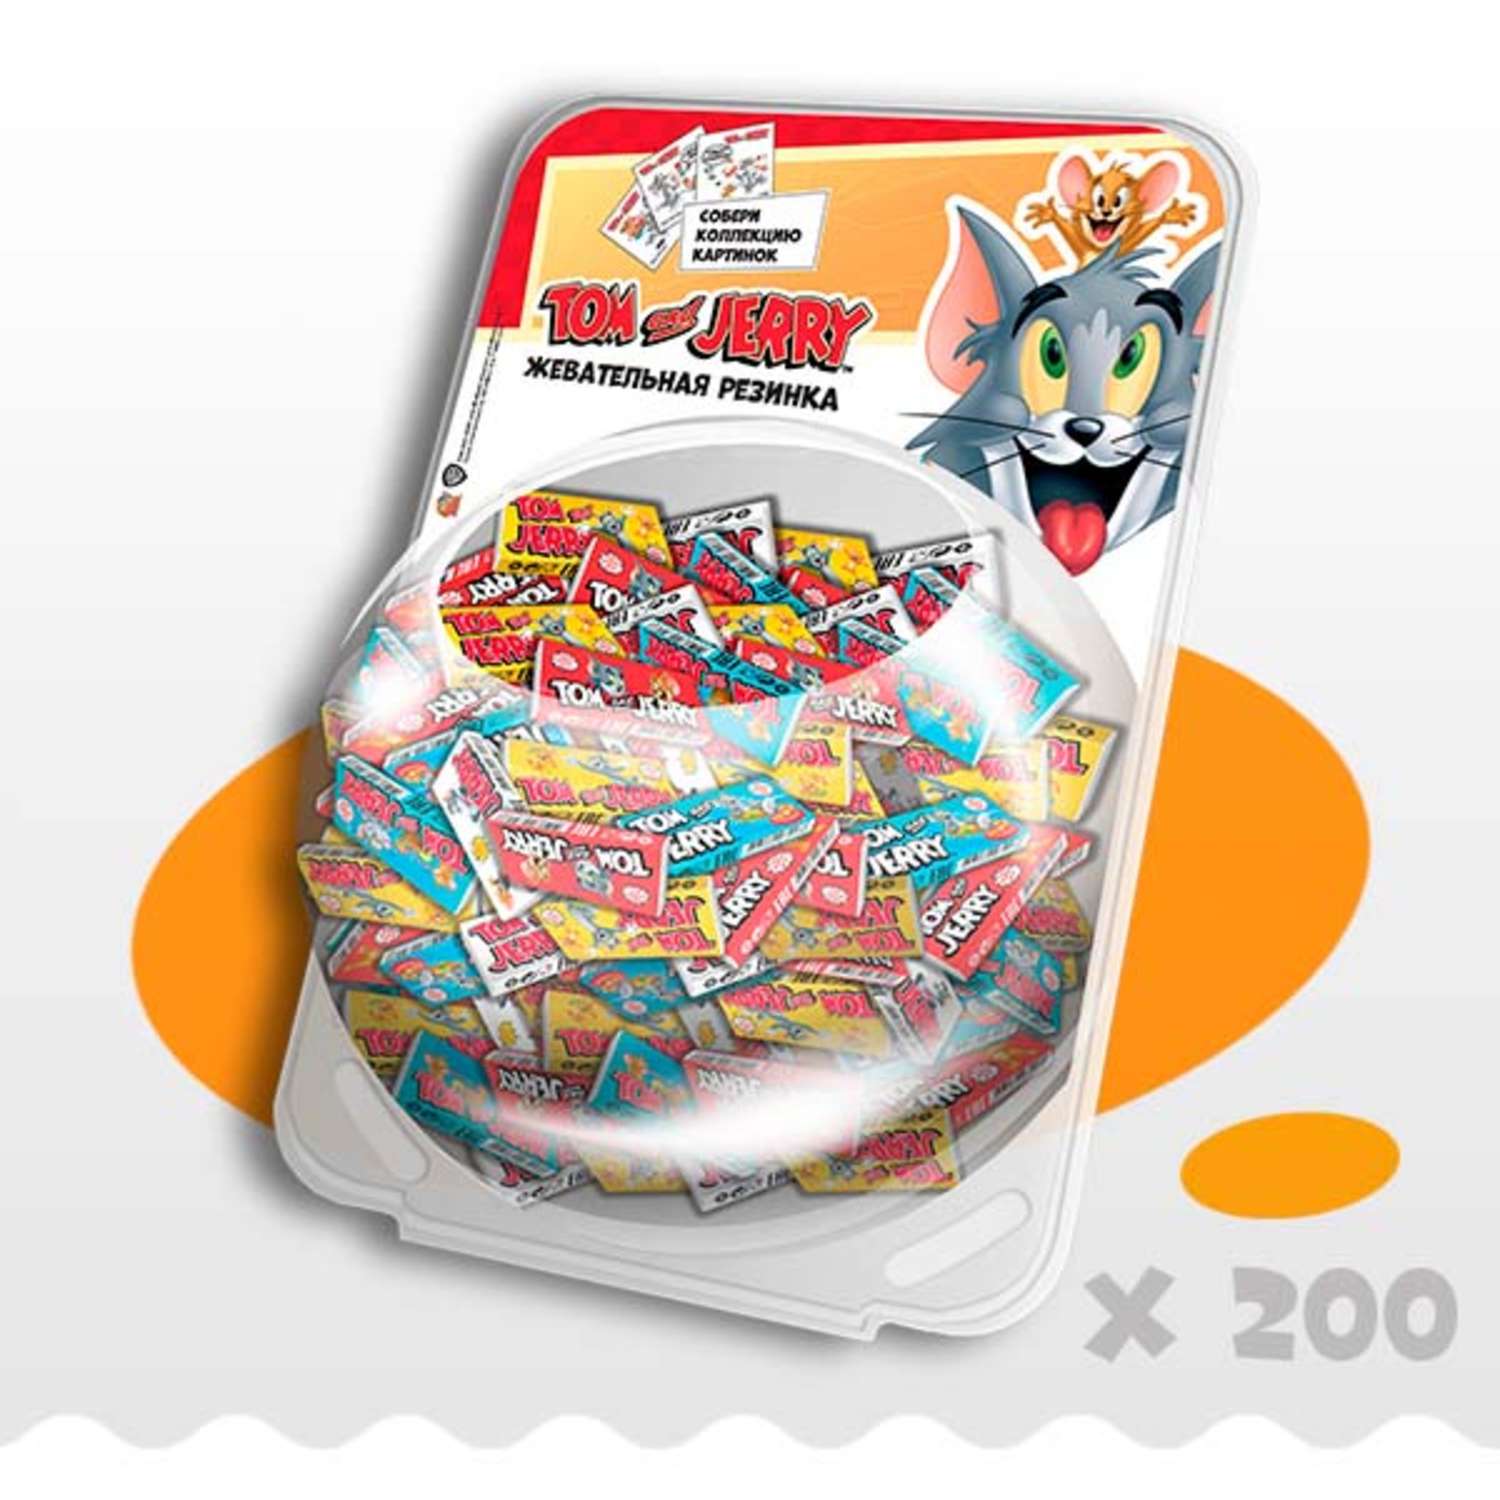 Жевательная резинка Tom and Jerry (WB) набор подарочный ассорти микс вкусов 200шт - фото 1